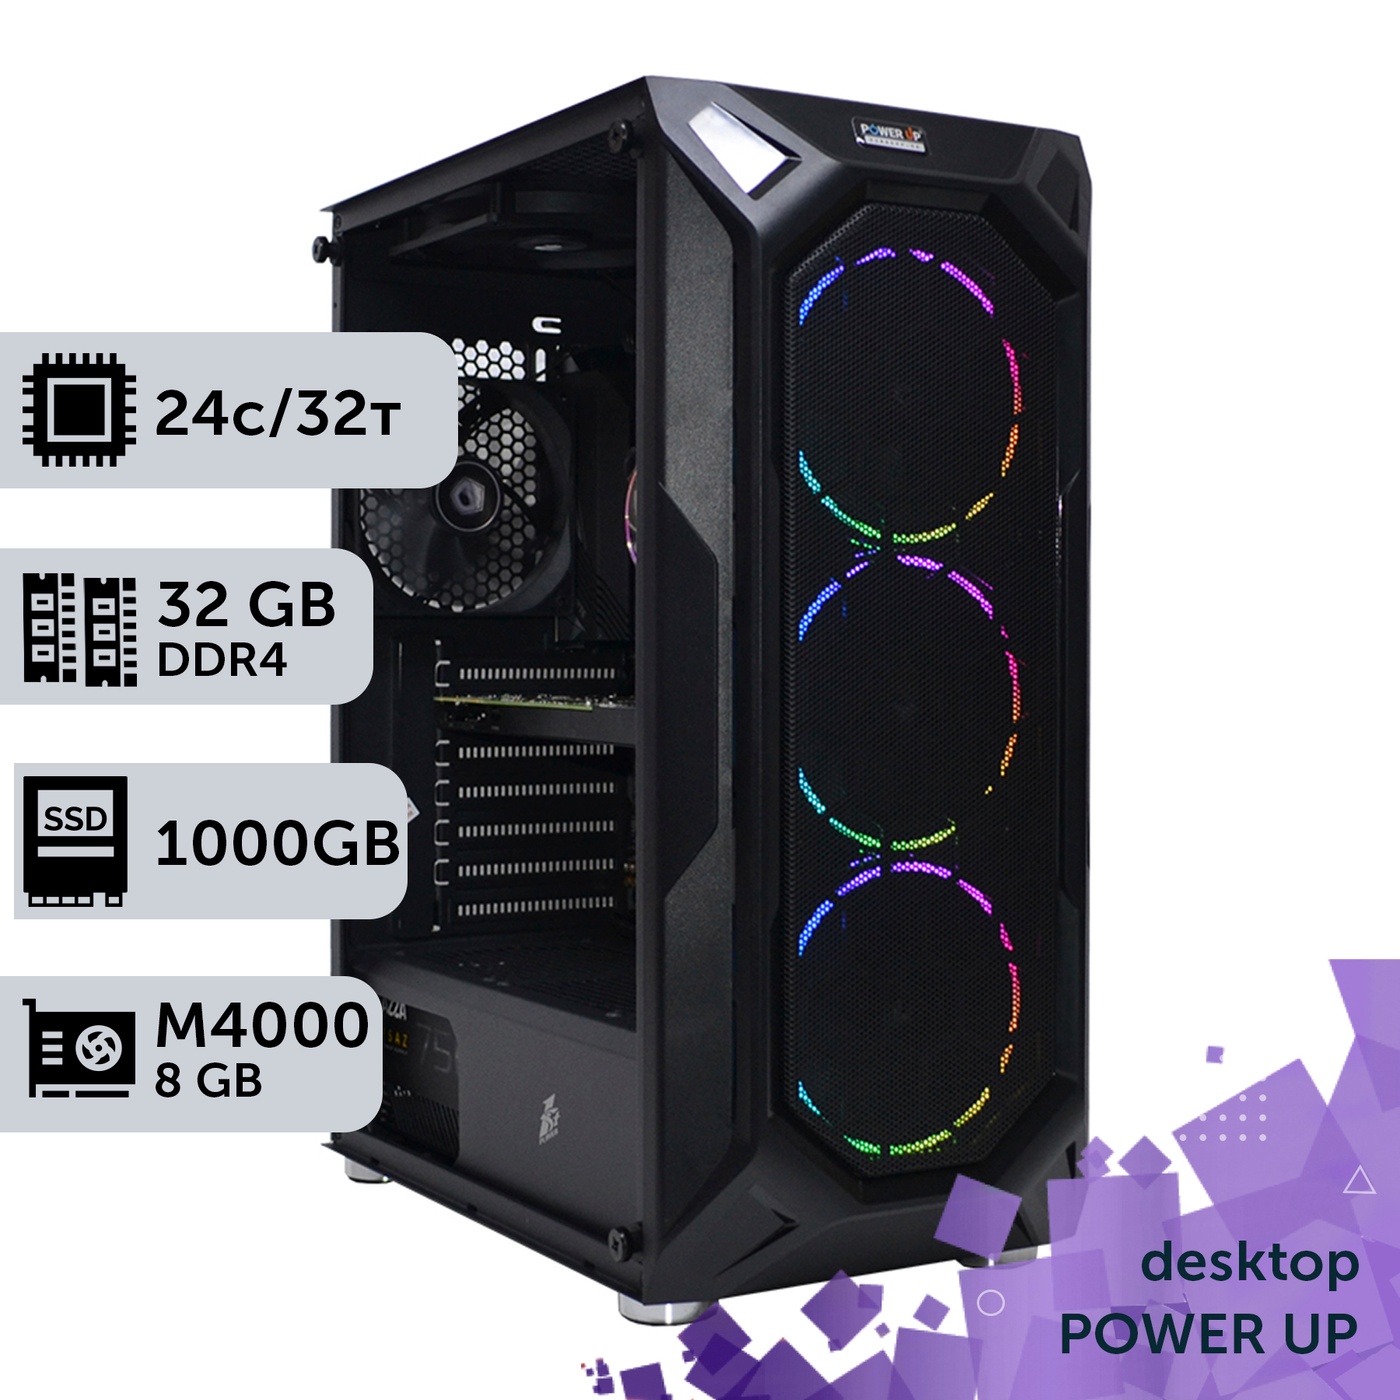 Рабочая станция PowerUp Desktop #217 Core i7 13700K/32 GB/SSD 1TB/NVIDIA Quadro M4000 8GB